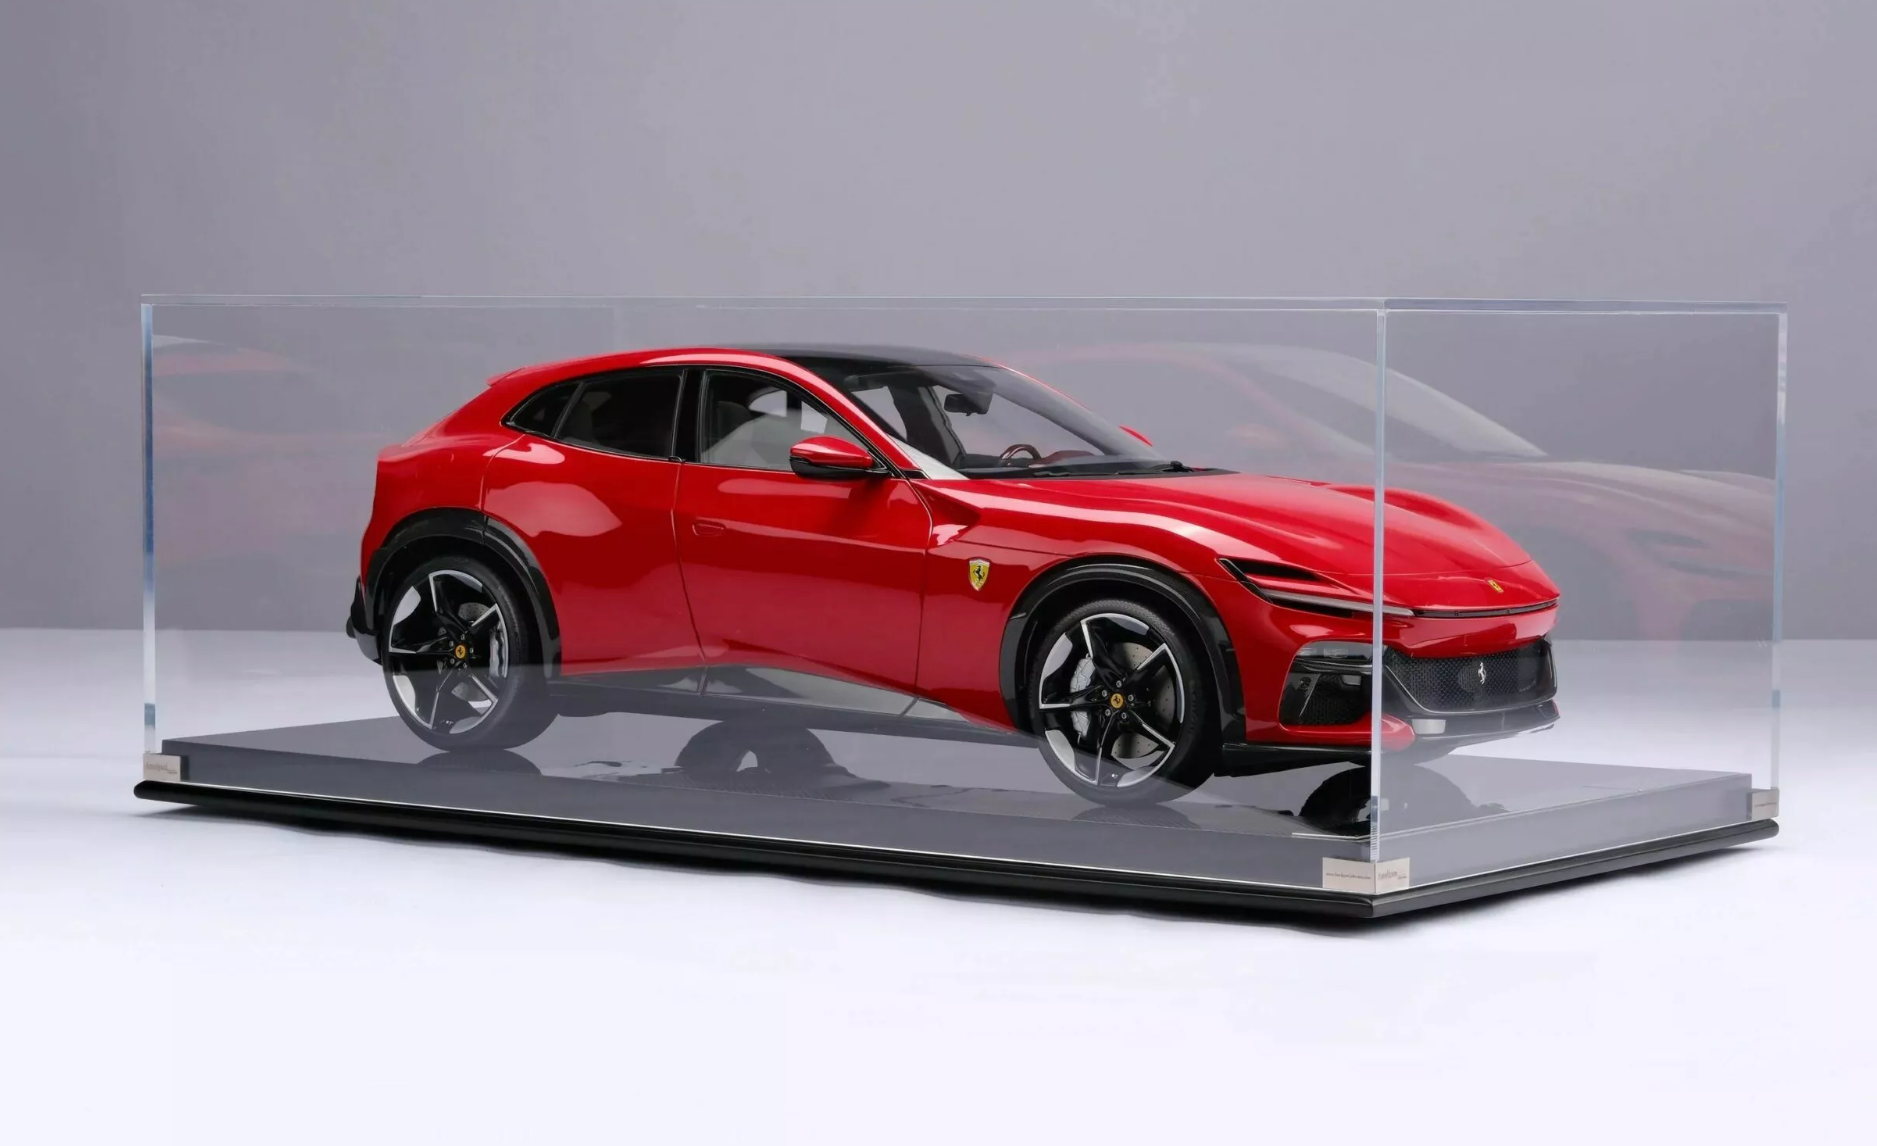 Siêu xe Ferrari Purosangue mô hình sản xuất giới hạn, giá gần 480 triệu đồng